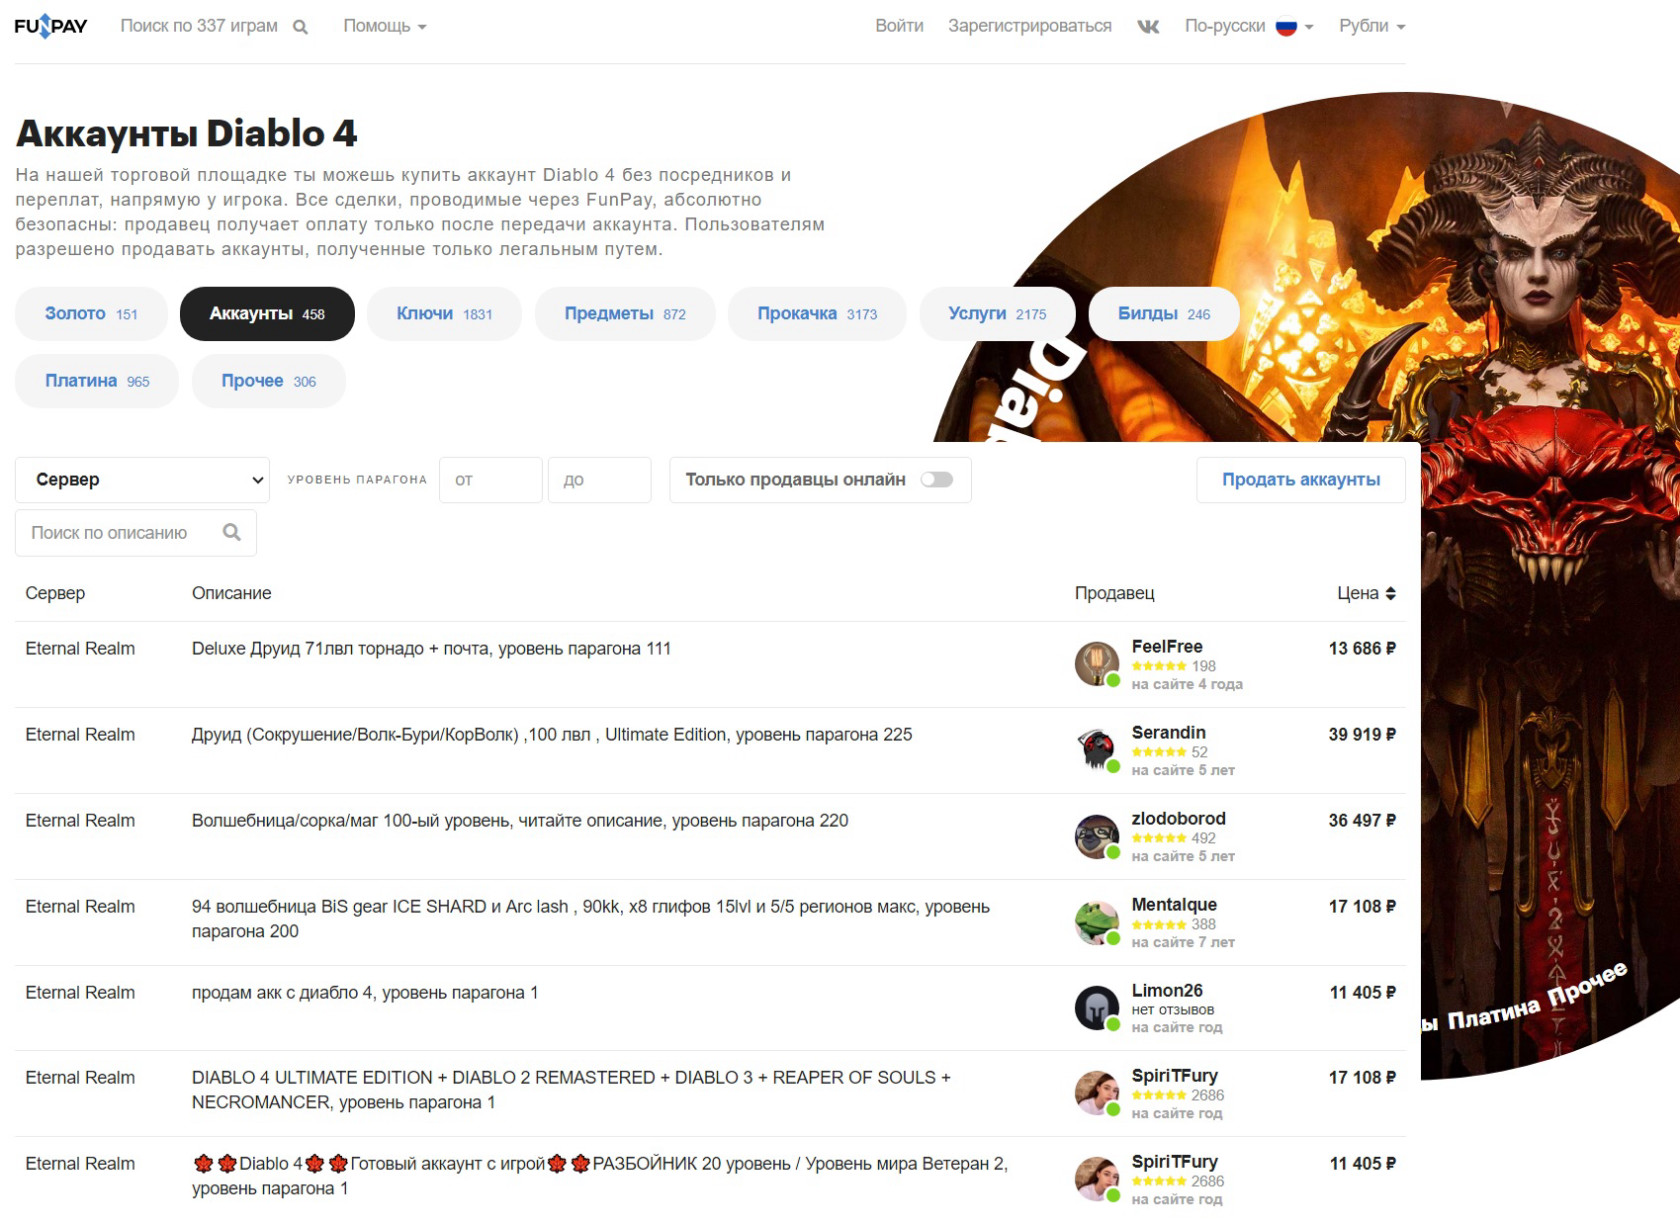 Пример продажи аккаунтов Diablo 4 на бирже FunPay.